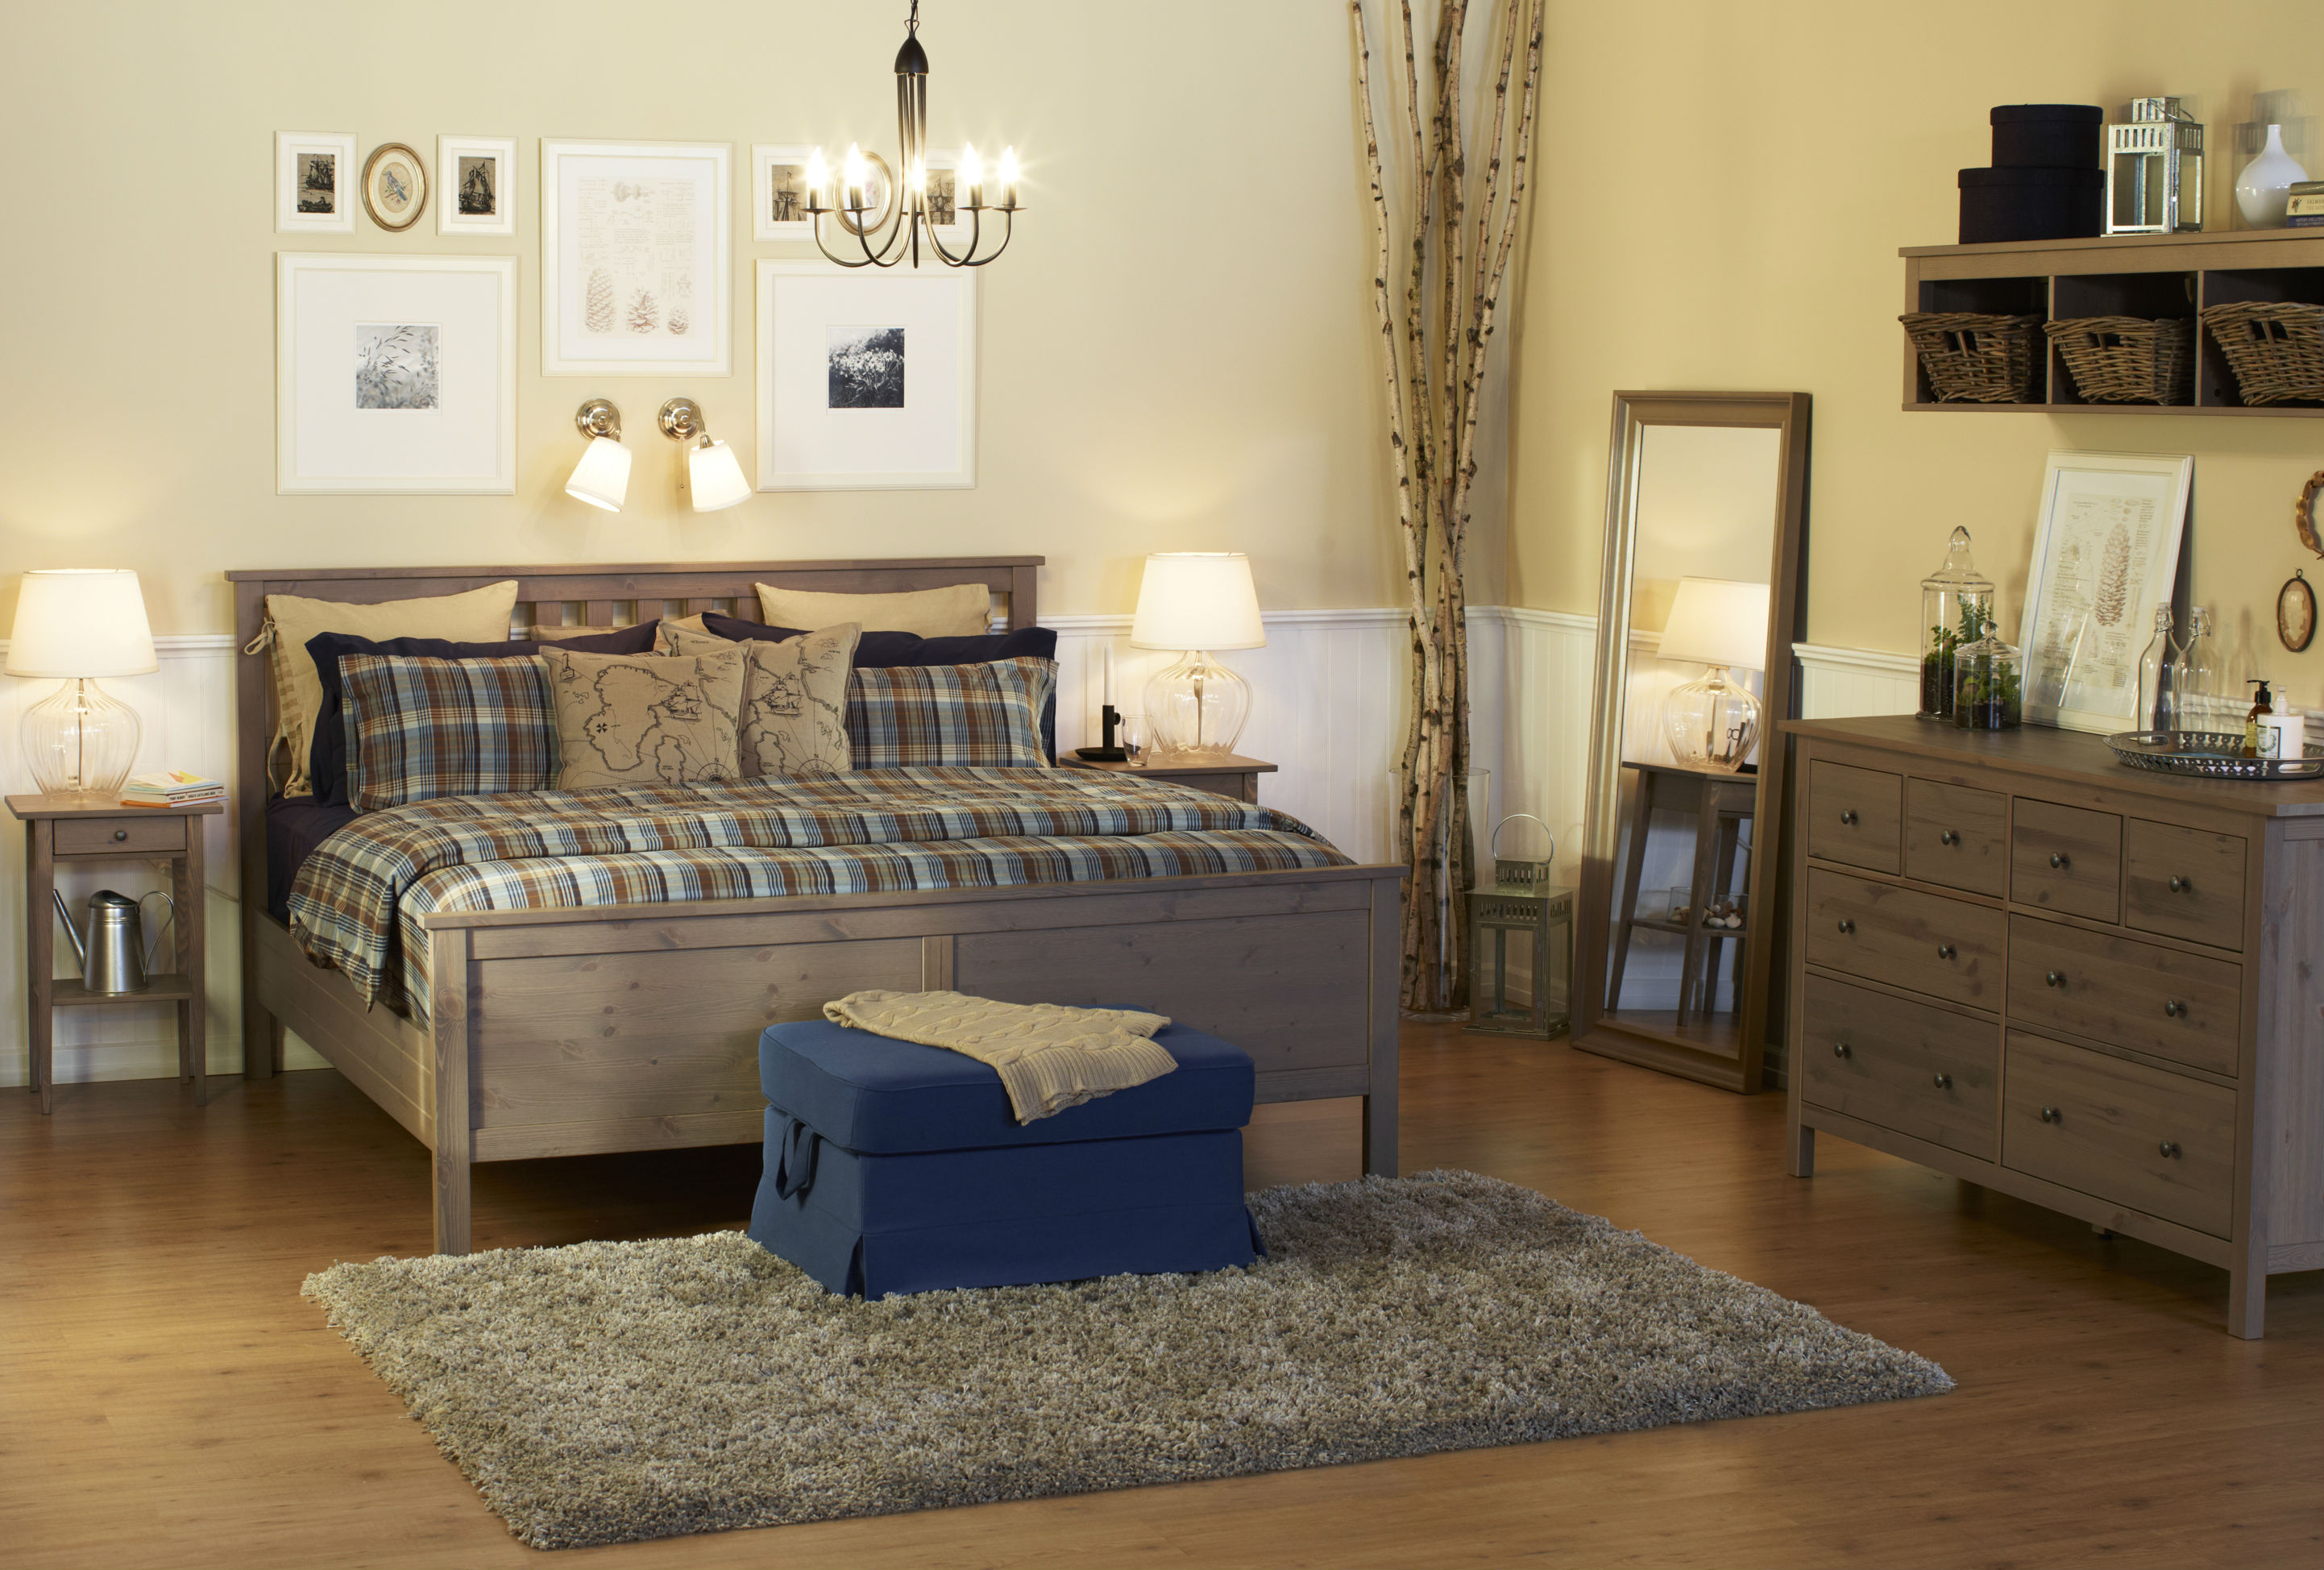 ikea grey hemnes bedroom furniture